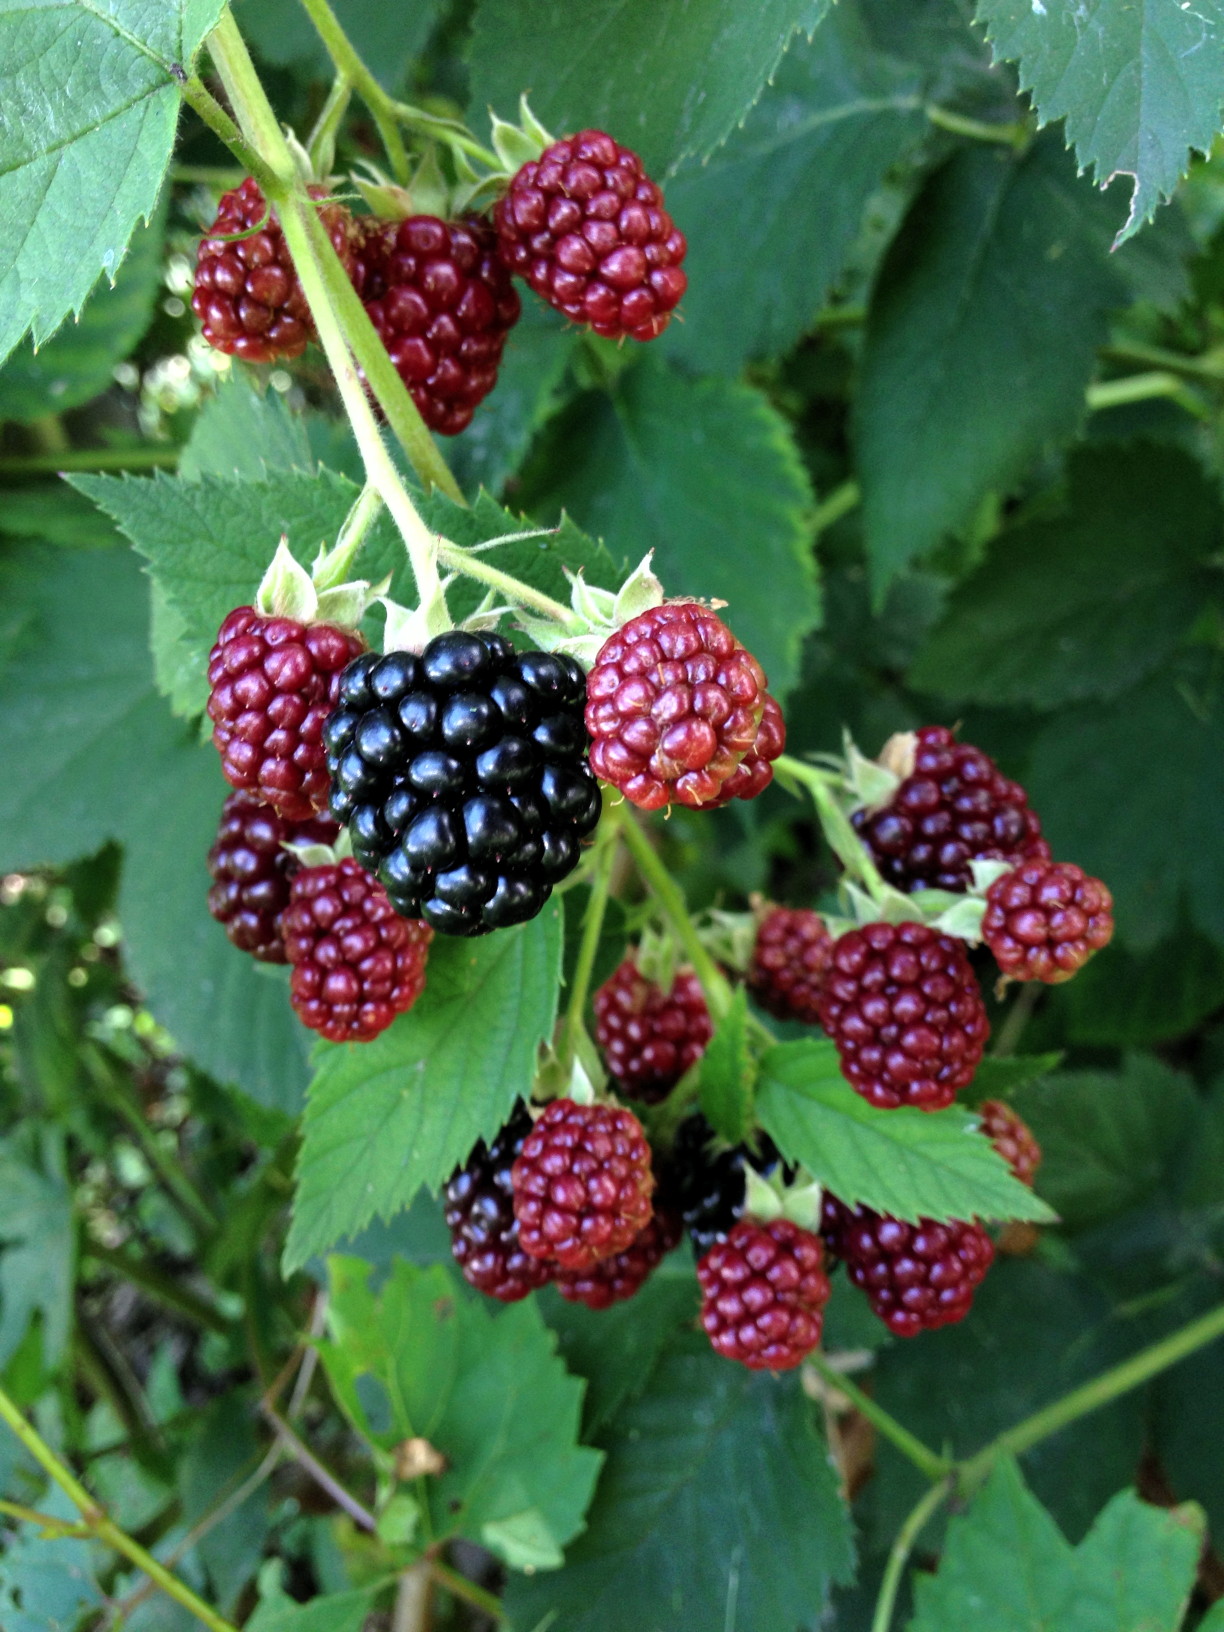 A taste of black berries